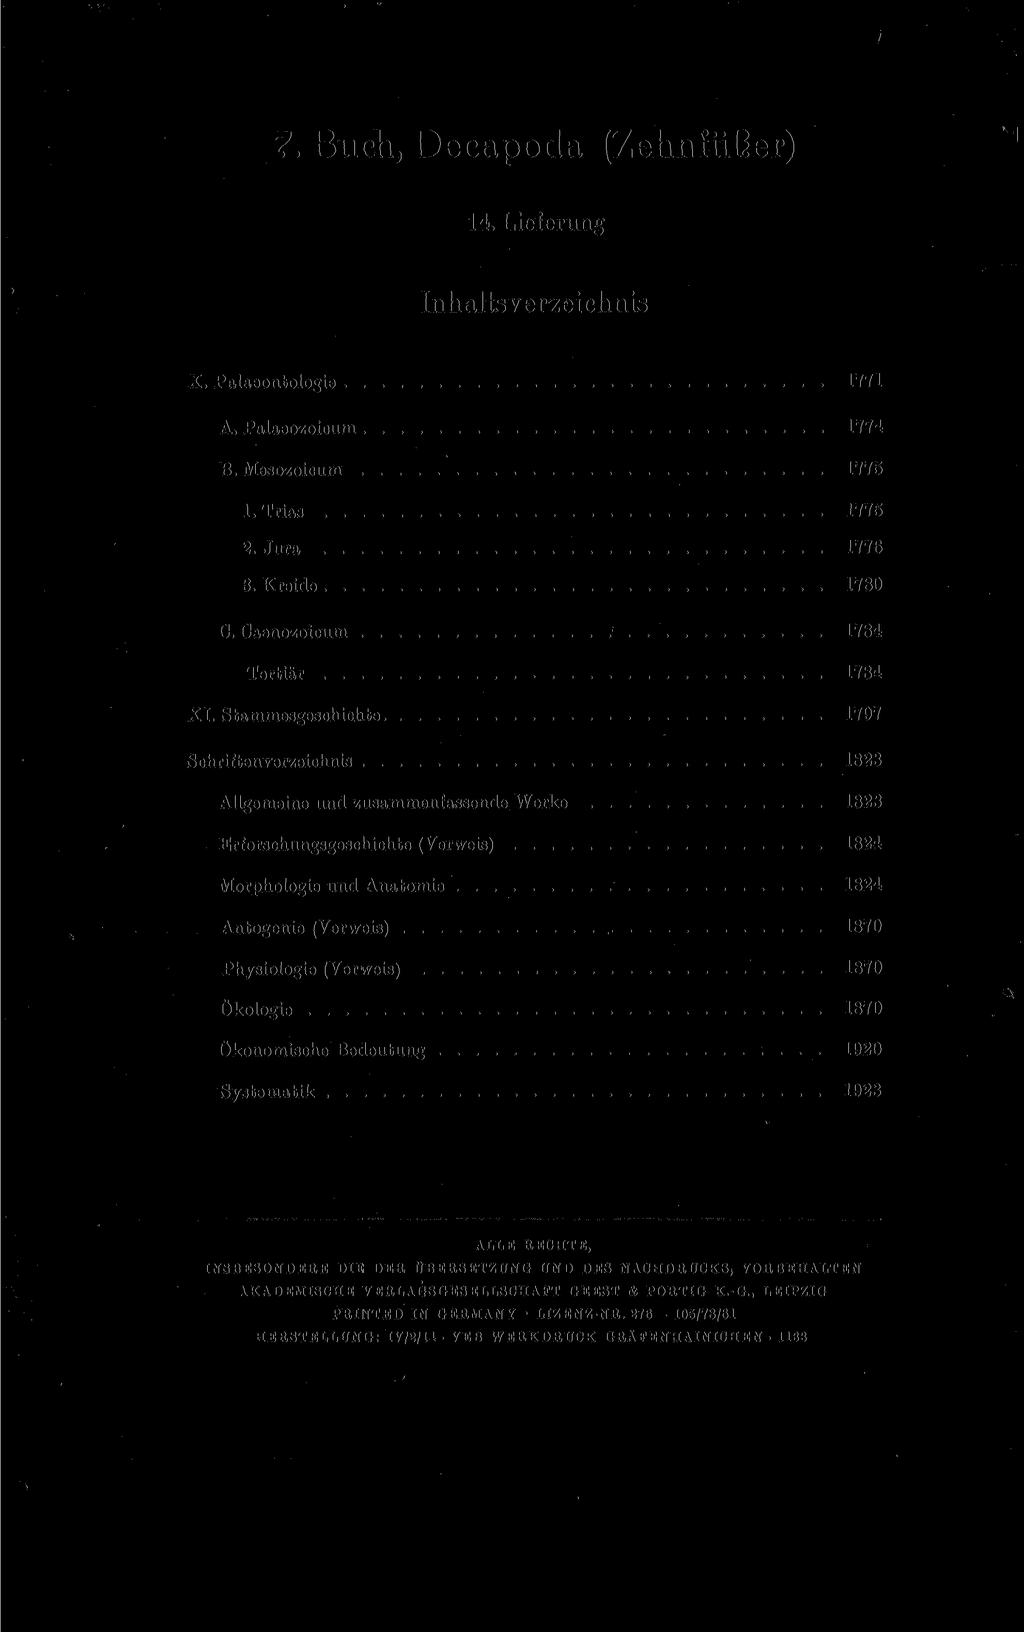 7. Buch, Decapoda (Zehnfüßer) 14. Lieferung Inhaltsverzeichnis X. Palaeontologie 1771 A. Palaeozoicum 1774 B. Mesozoicum 1775 1. Trias 1775 2. Jura 1776 3. Kreide 1780 C.